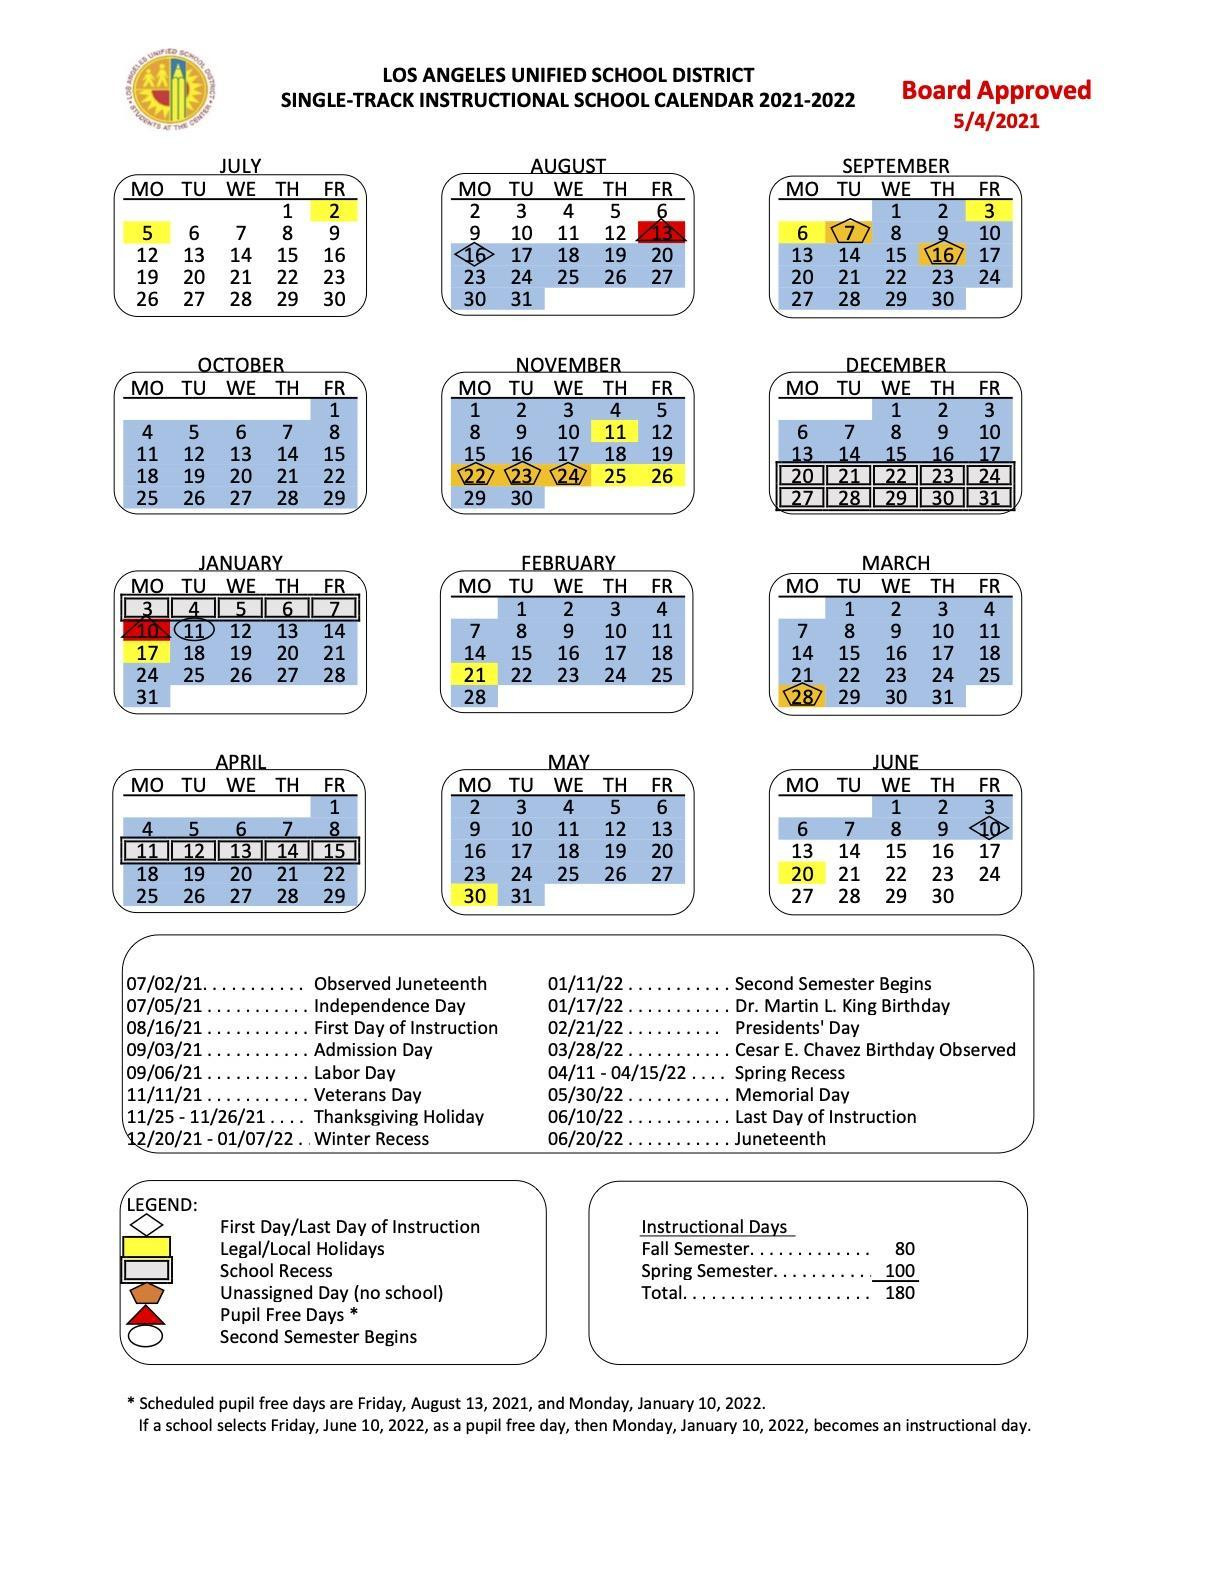 Lausd School Calendar /Calendario Escolar 2021-22 - Sanchez, Maria-School Calendar 2021 To 2022 California